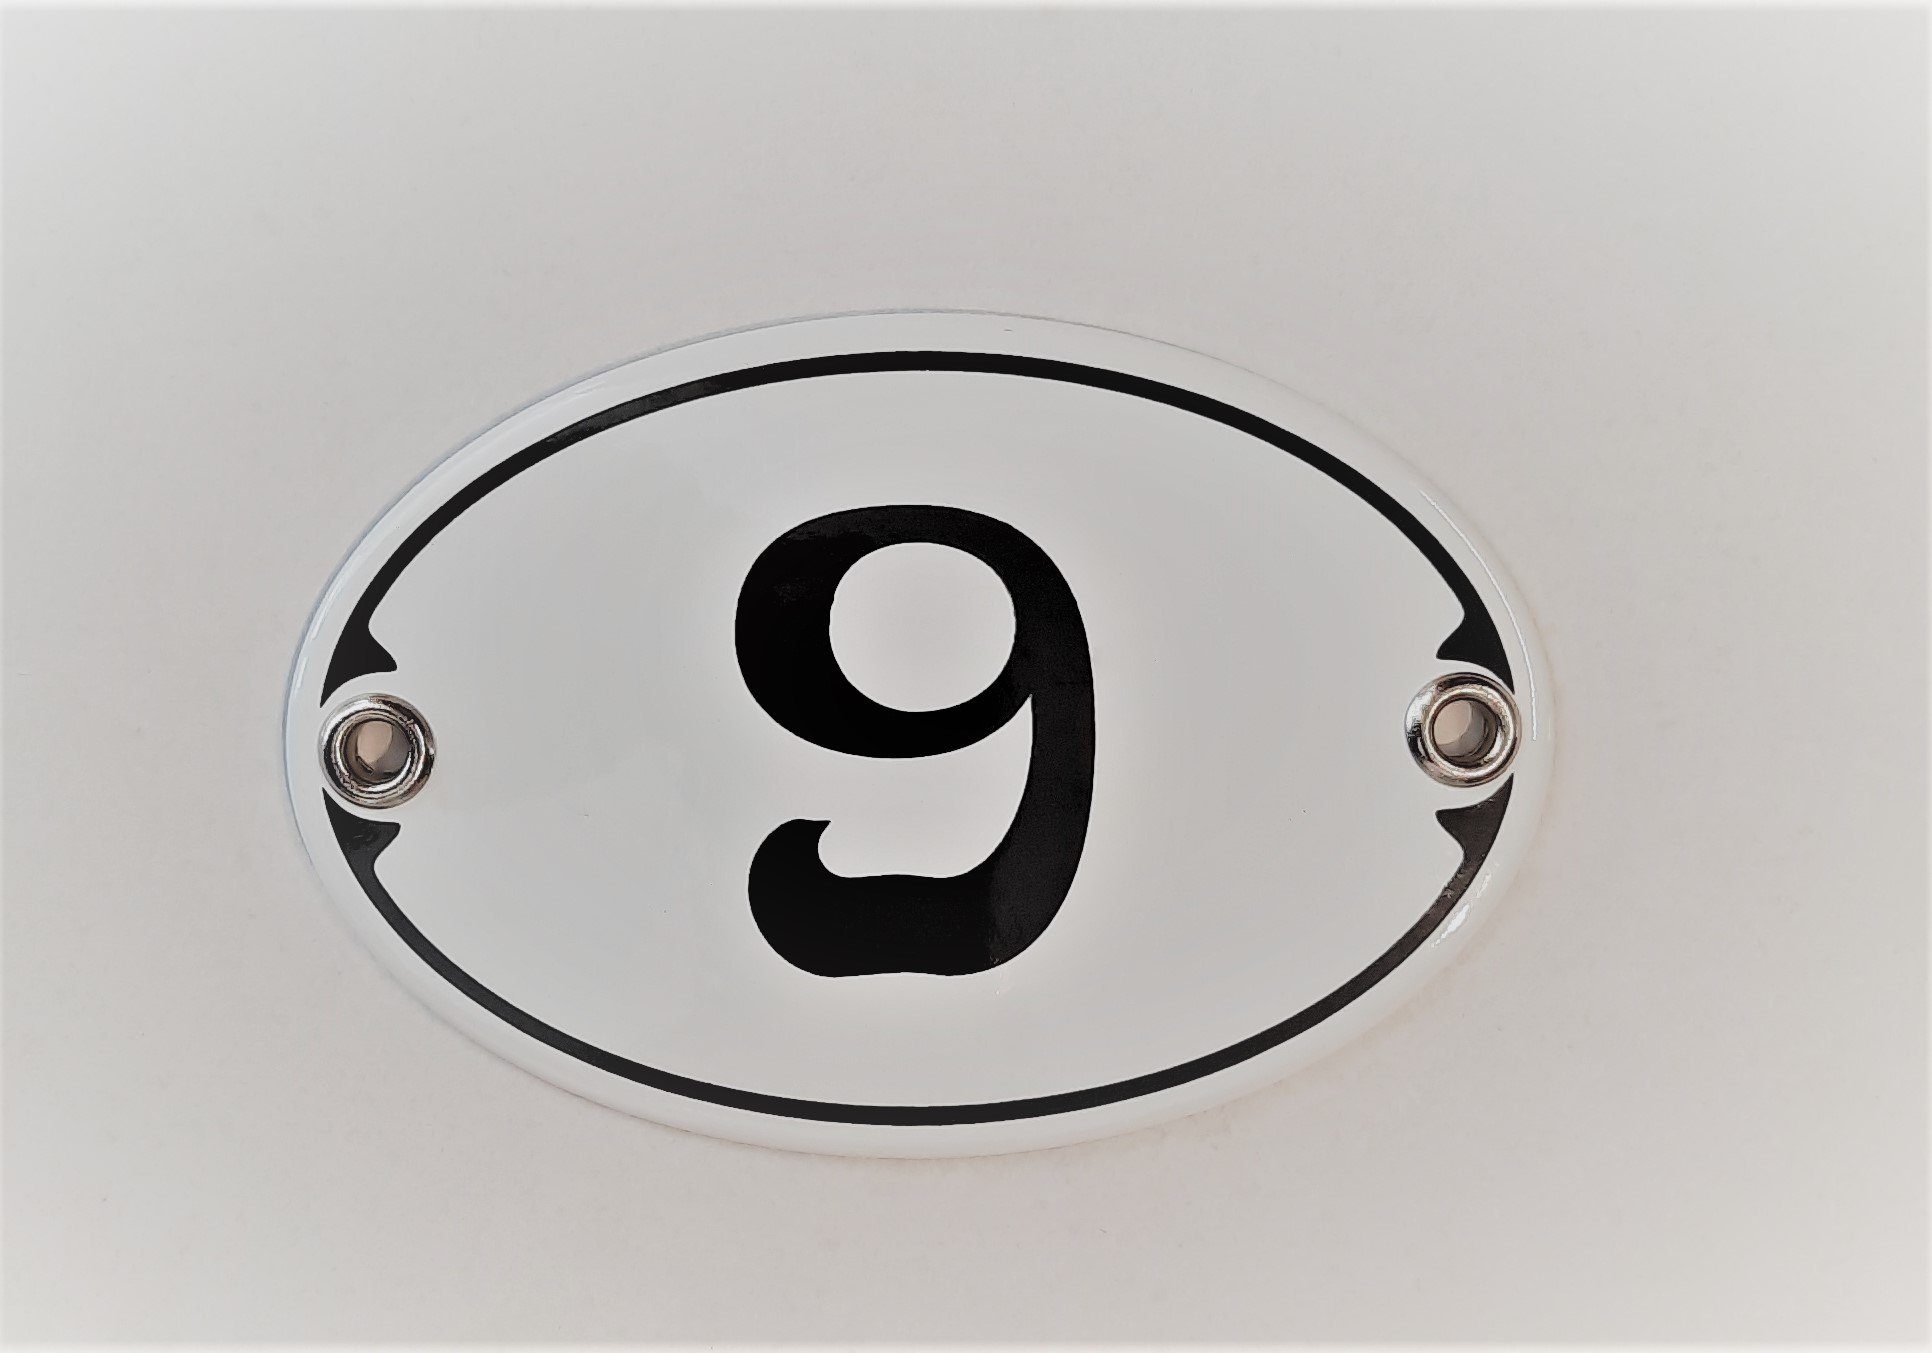 Elina Email Schilder Hausnummer Zahlenschild "9", (Emaille/Email)